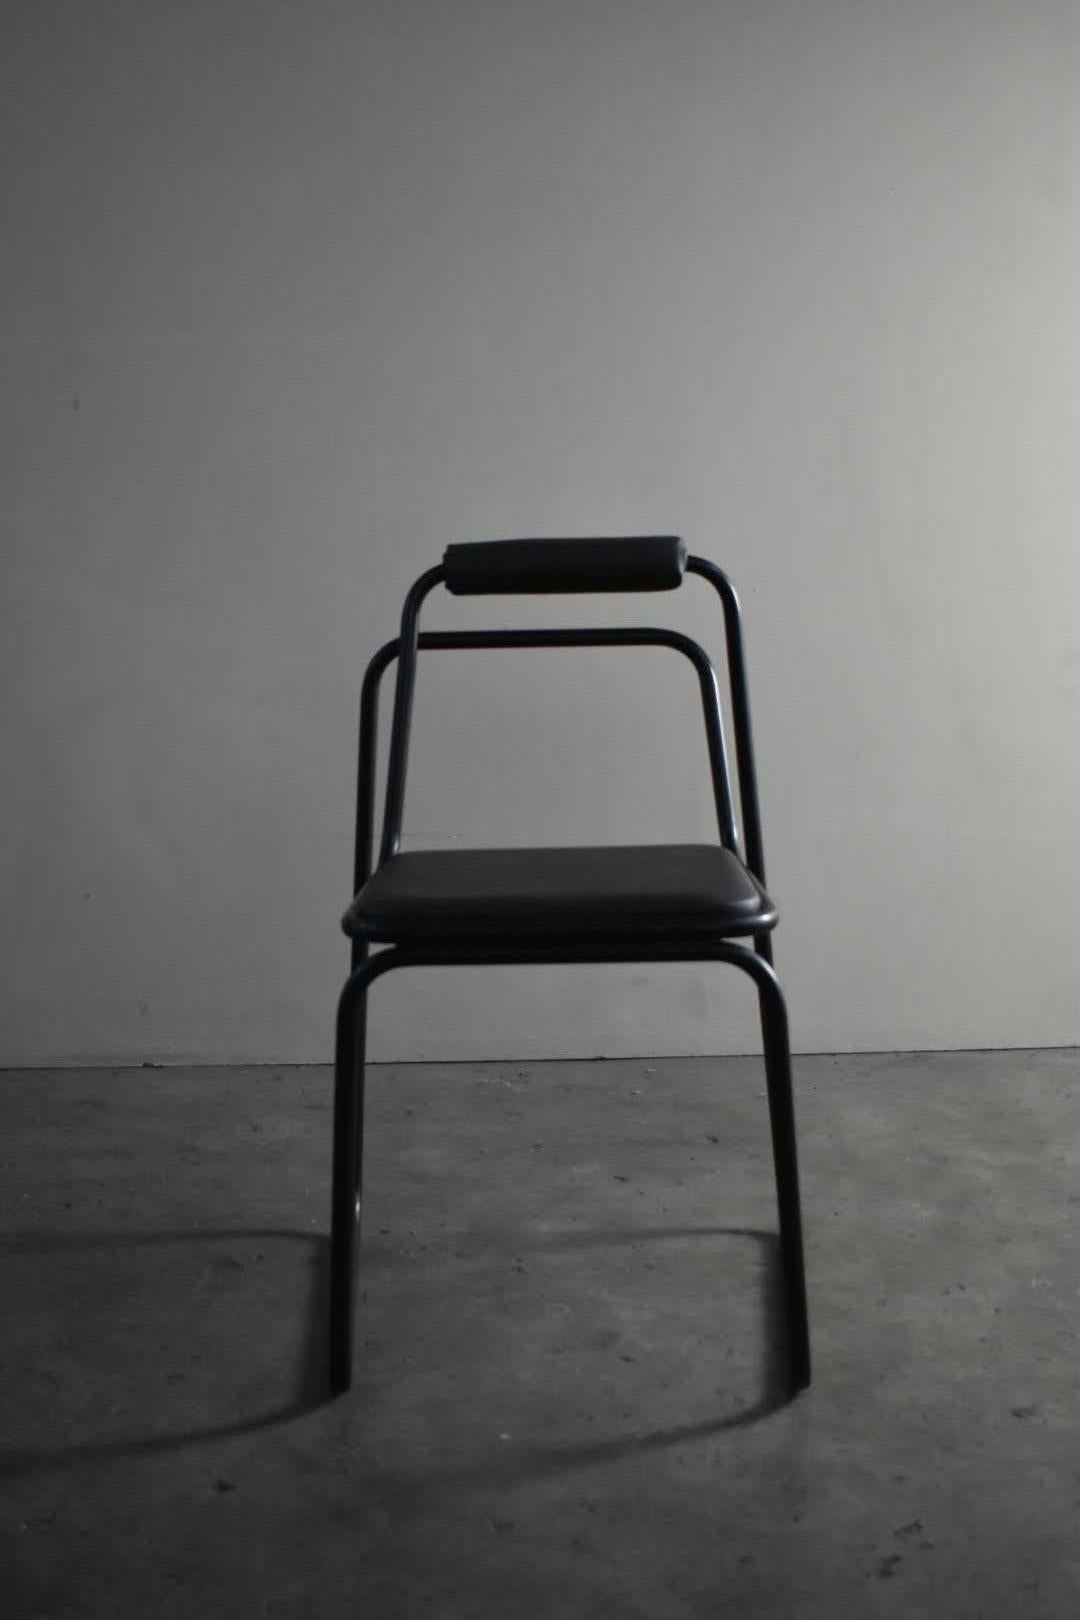 La sedia Glitch è ispirata al lavoro dell'artista Ant Scott e la sua serie di opere Glitch 
L'idea della sedia è spinta oltre il considerato perfetto
interfaccia per generare imprevisti, anomalie che diventano decorazione.
Realizzata in un'unica